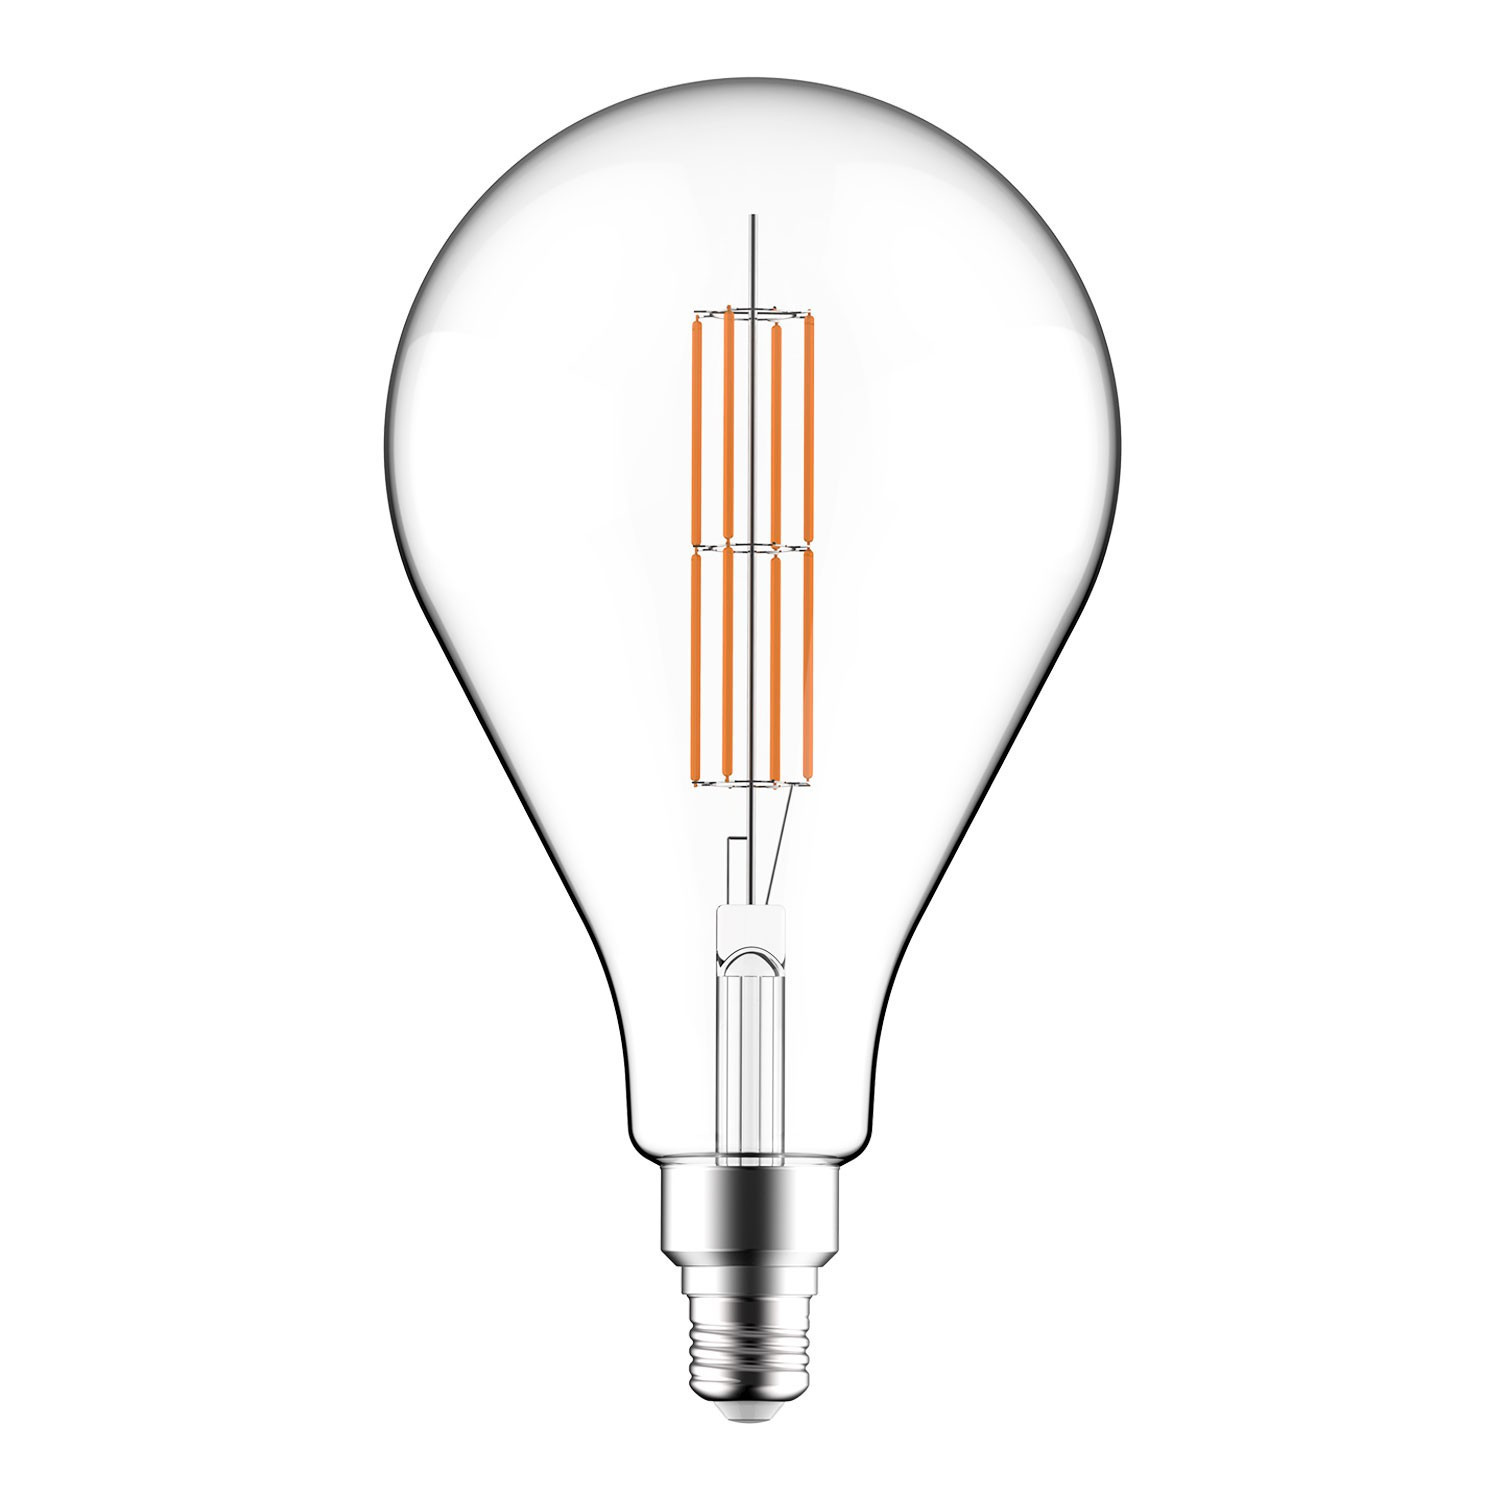 Lampadina LED Trasparente XXL Pera PS160 Doppio filamento Dritto 11W 1521Lm E27 2700K Dimmerabile